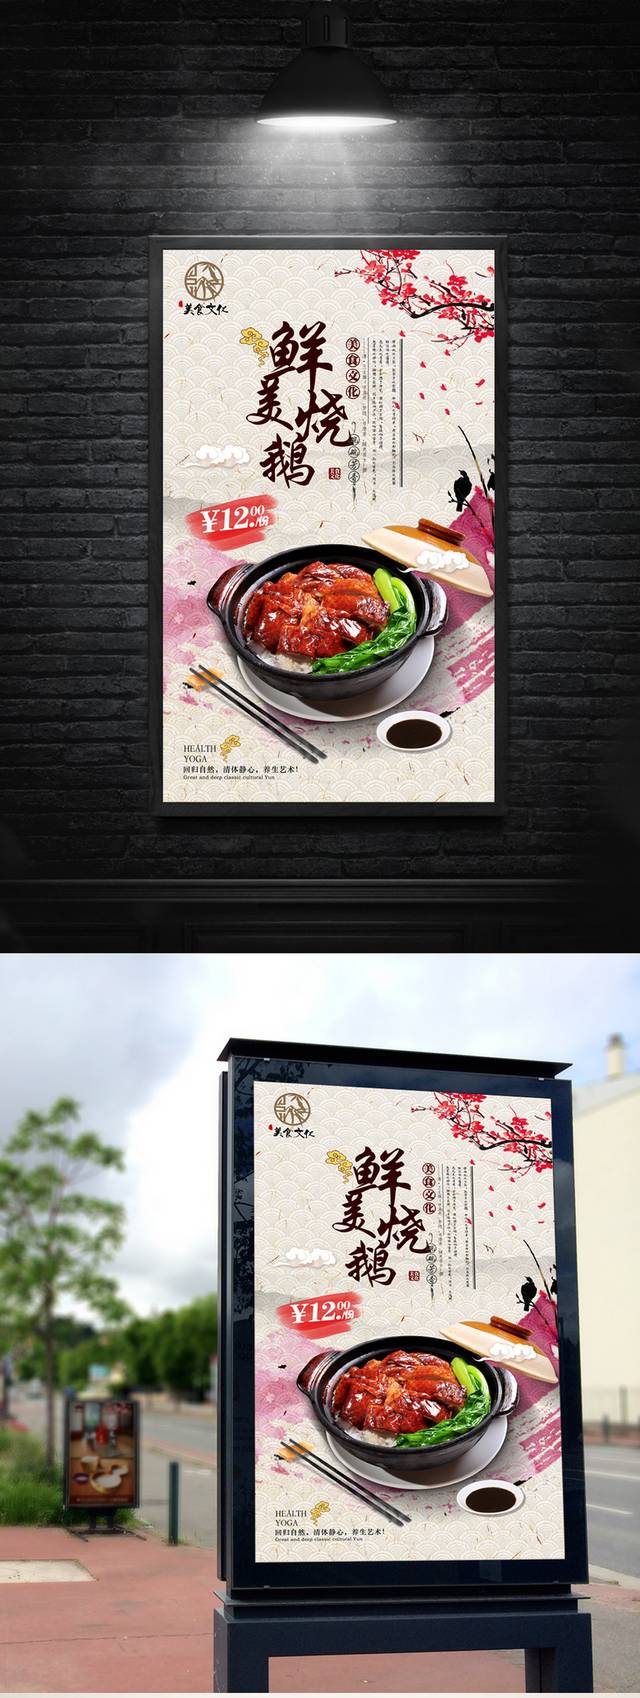 经典中国风烧鹅宣传海报设计